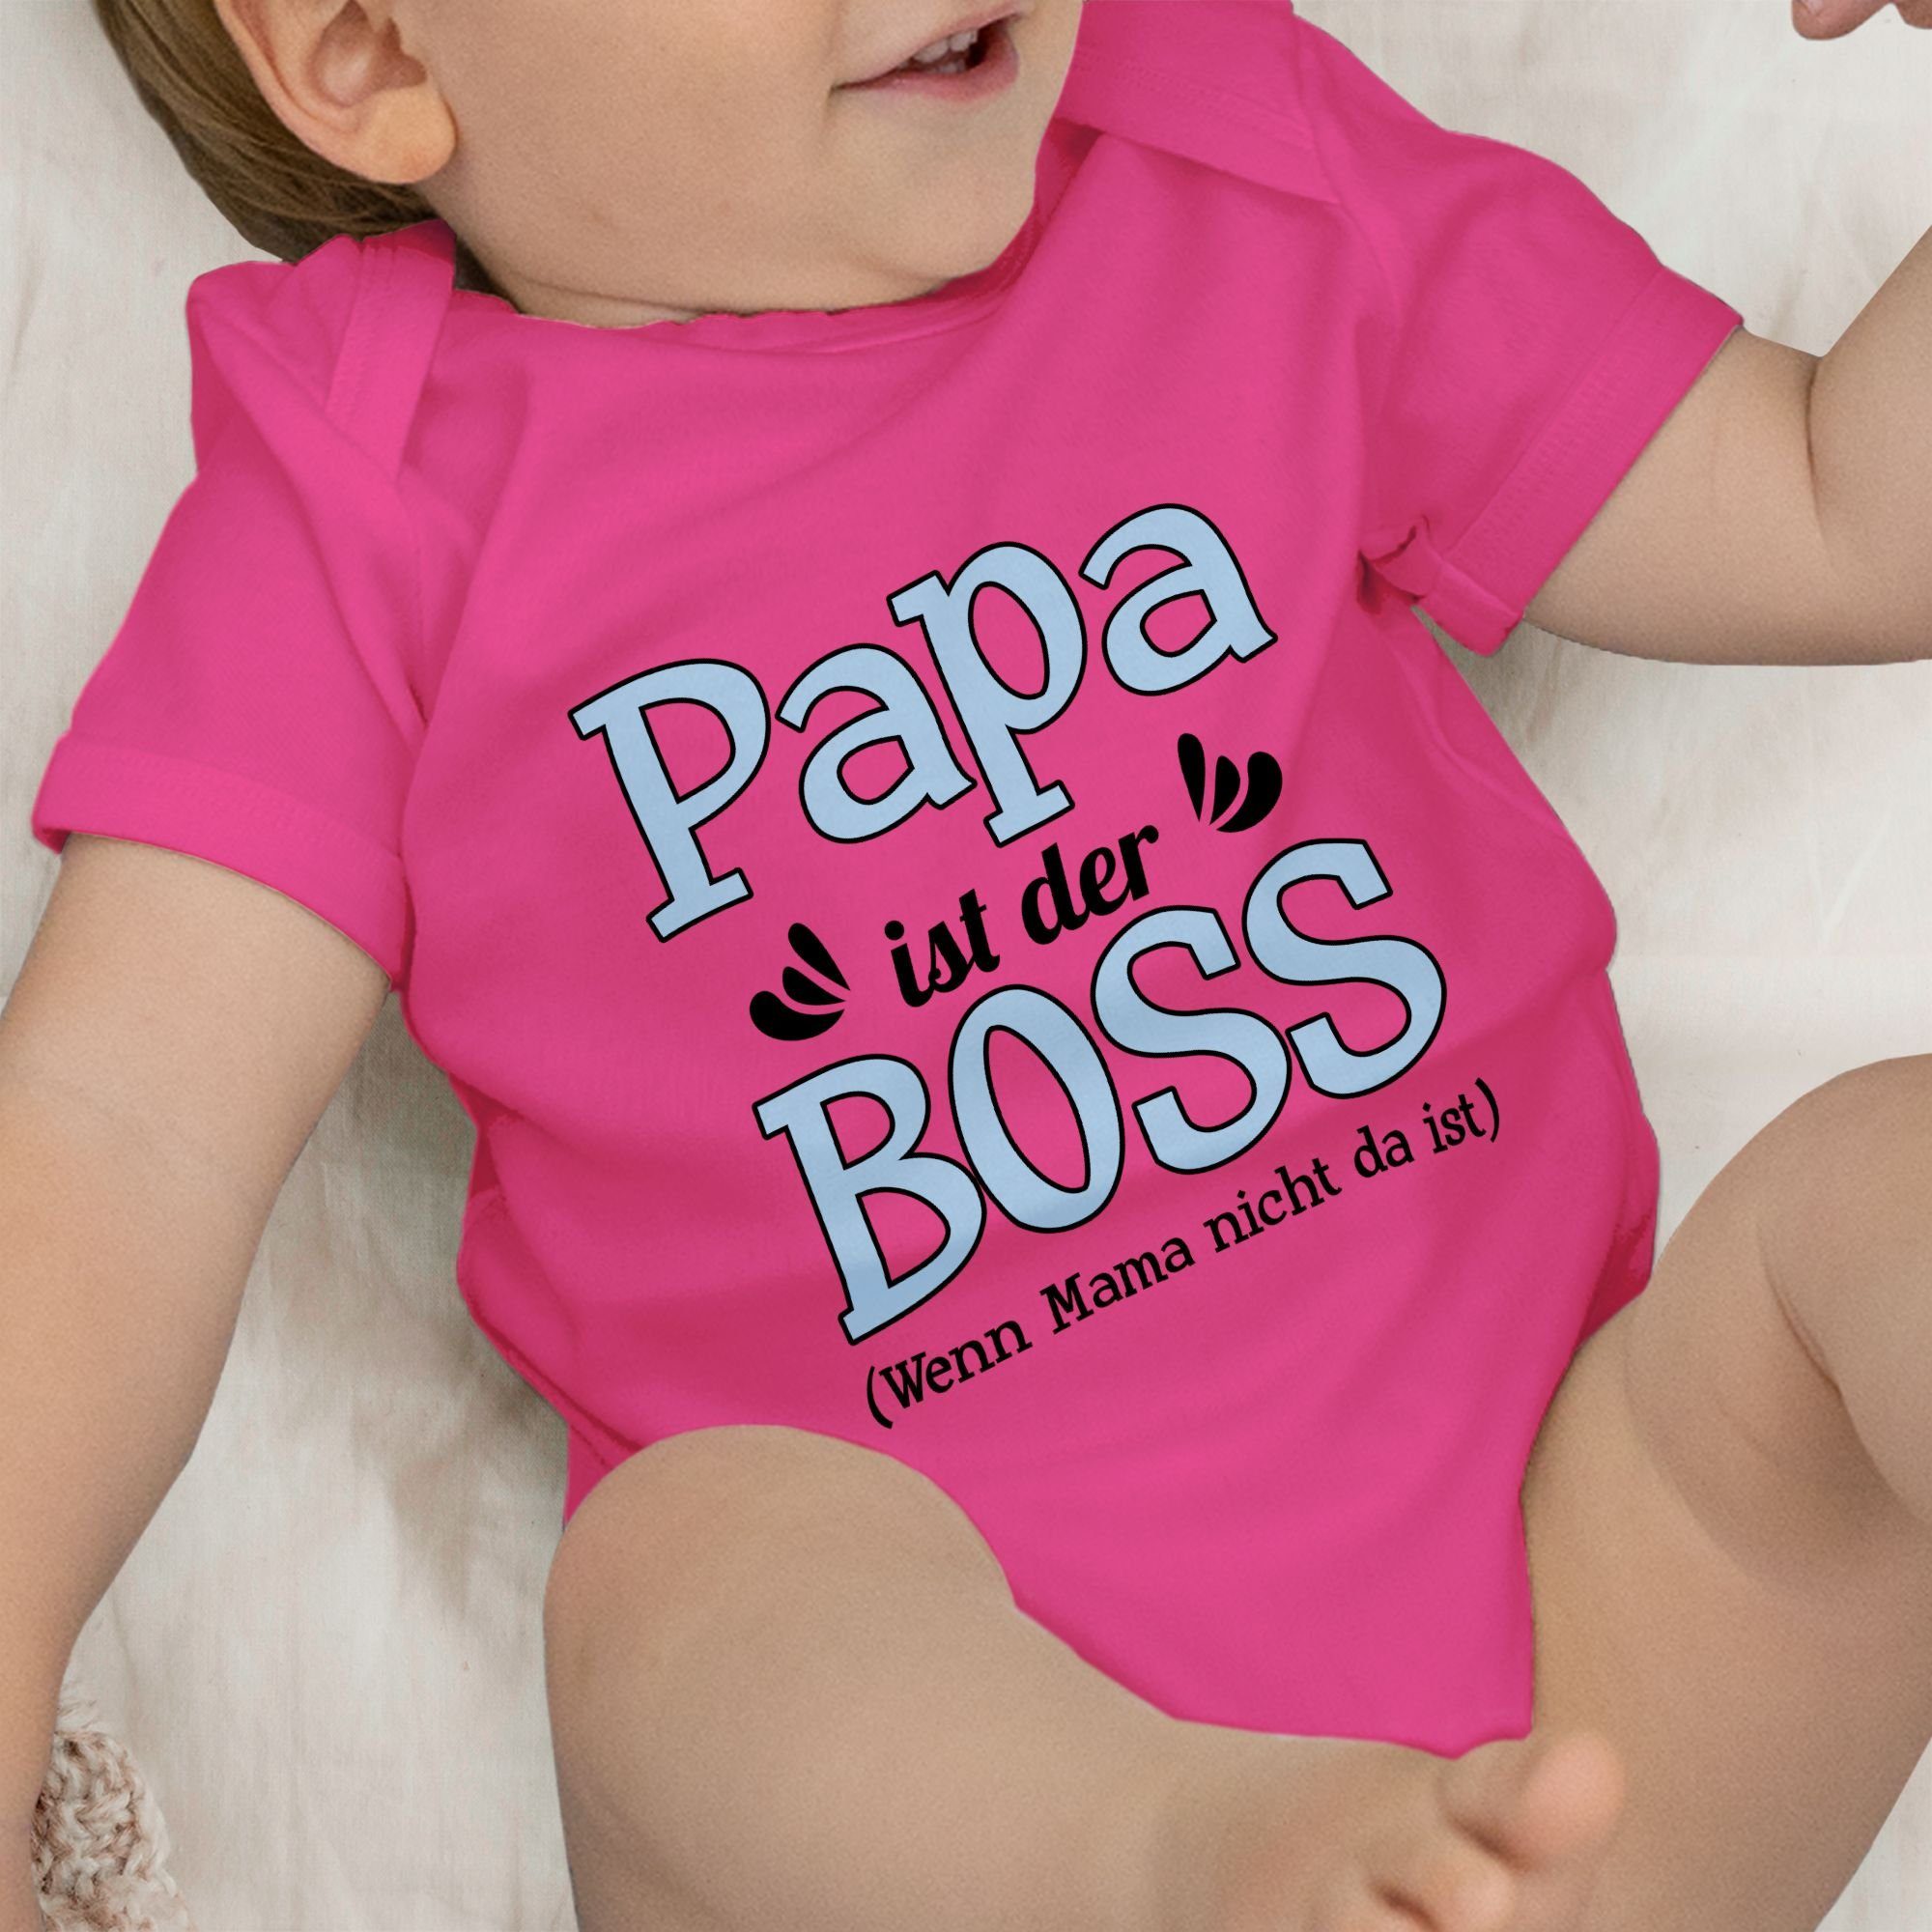 2 Shirtracer Sprüche ist der Shirtbody Boss Papa Mama ist wenn da Fuchsia - Baby nicht blau